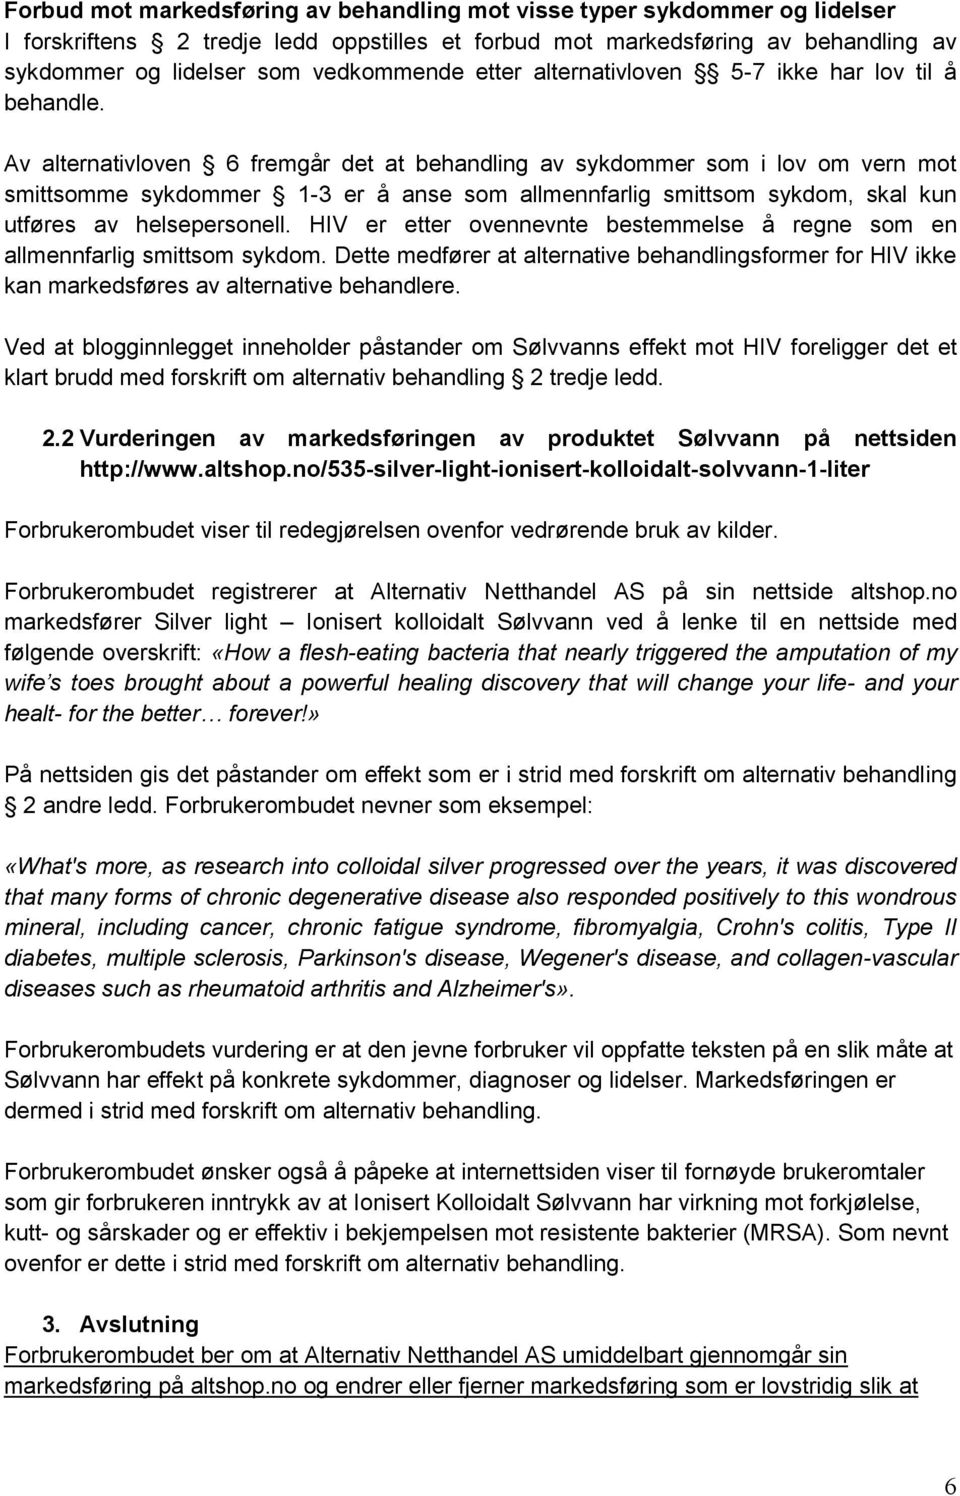 Av alternativloven 6 fremgår det at behandling av sykdommer som i lov om vern mot smittsomme sykdommer 1-3 er å anse som allmennfarlig smittsom sykdom, skal kun utføres av helsepersonell.